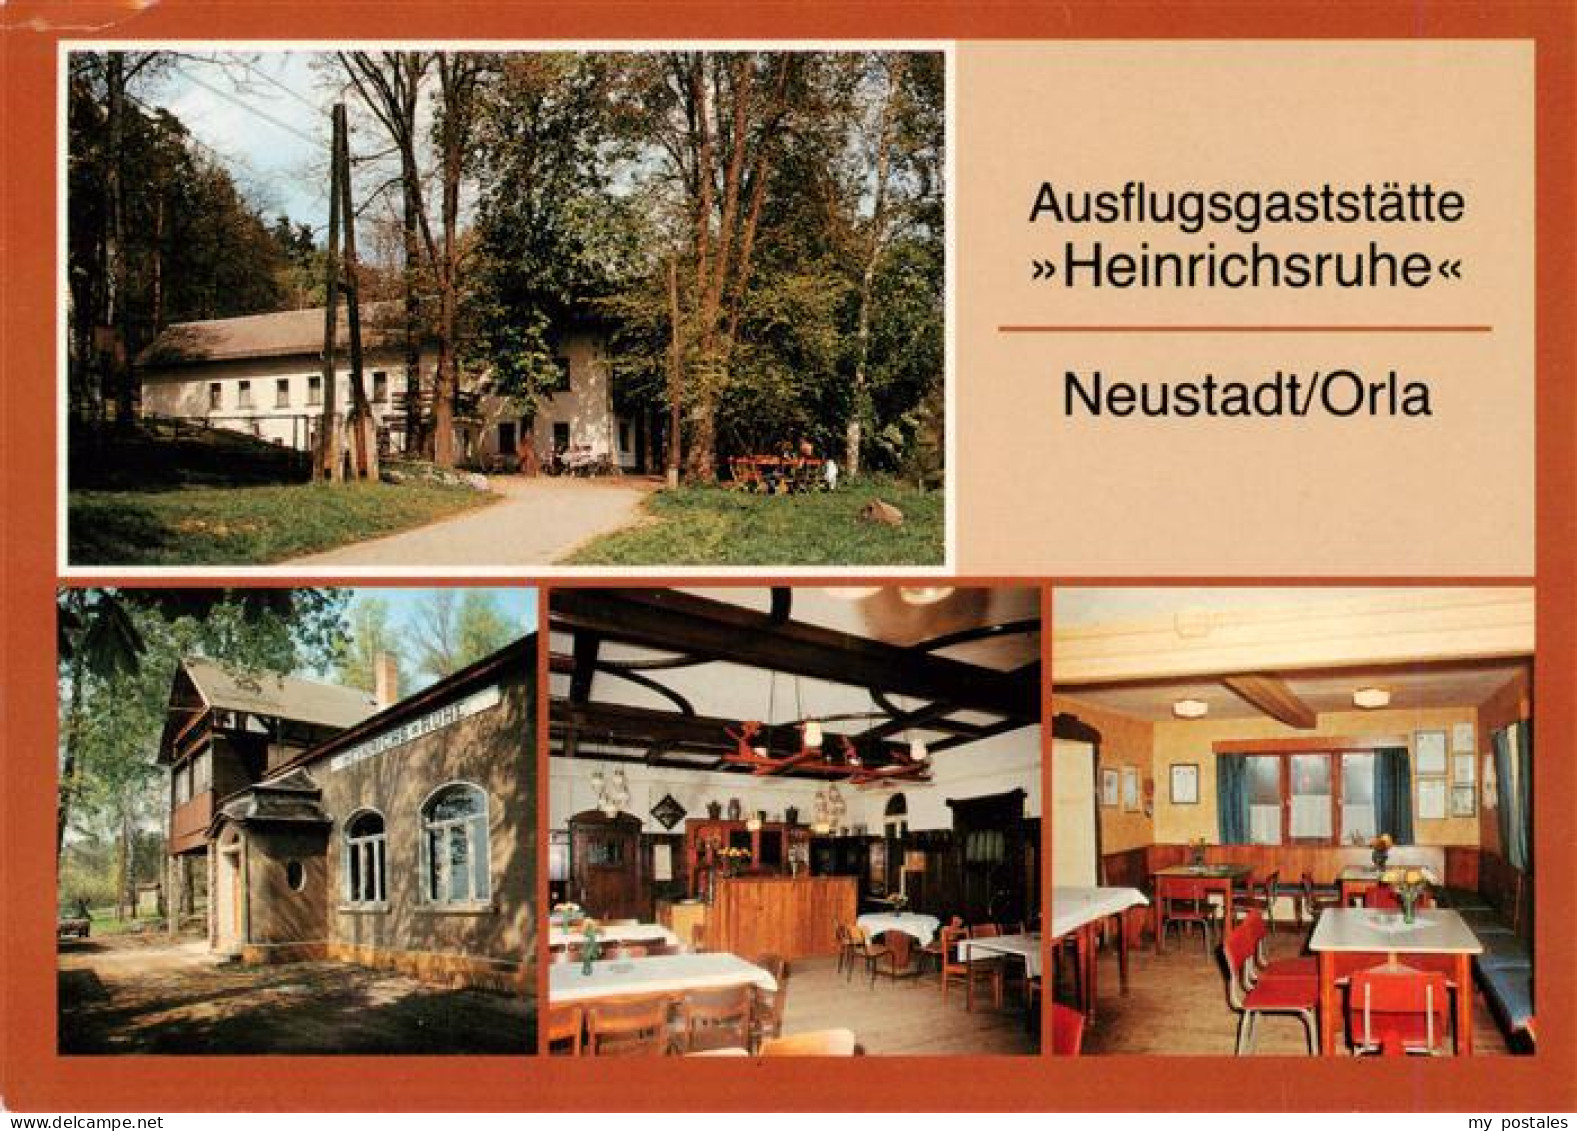 73916935 Neustadt Orla Ausflugsgaststaette Heinrichsruhe Gastraeume - Neustadt / Orla